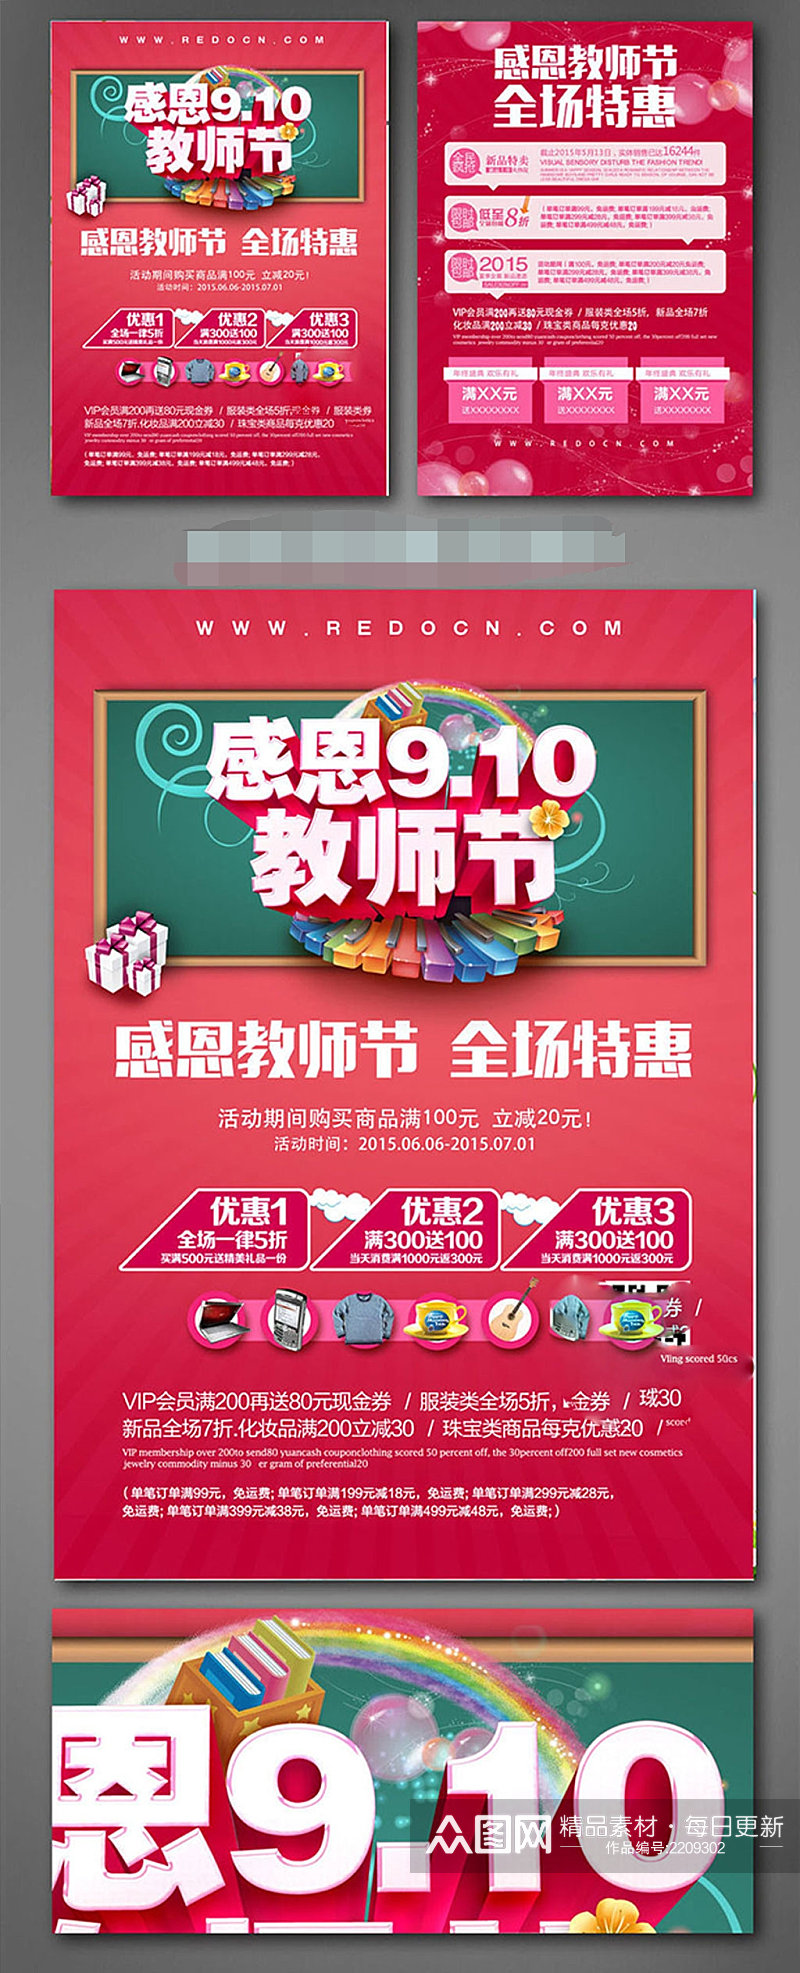 910教师节促销宣传单设计素材